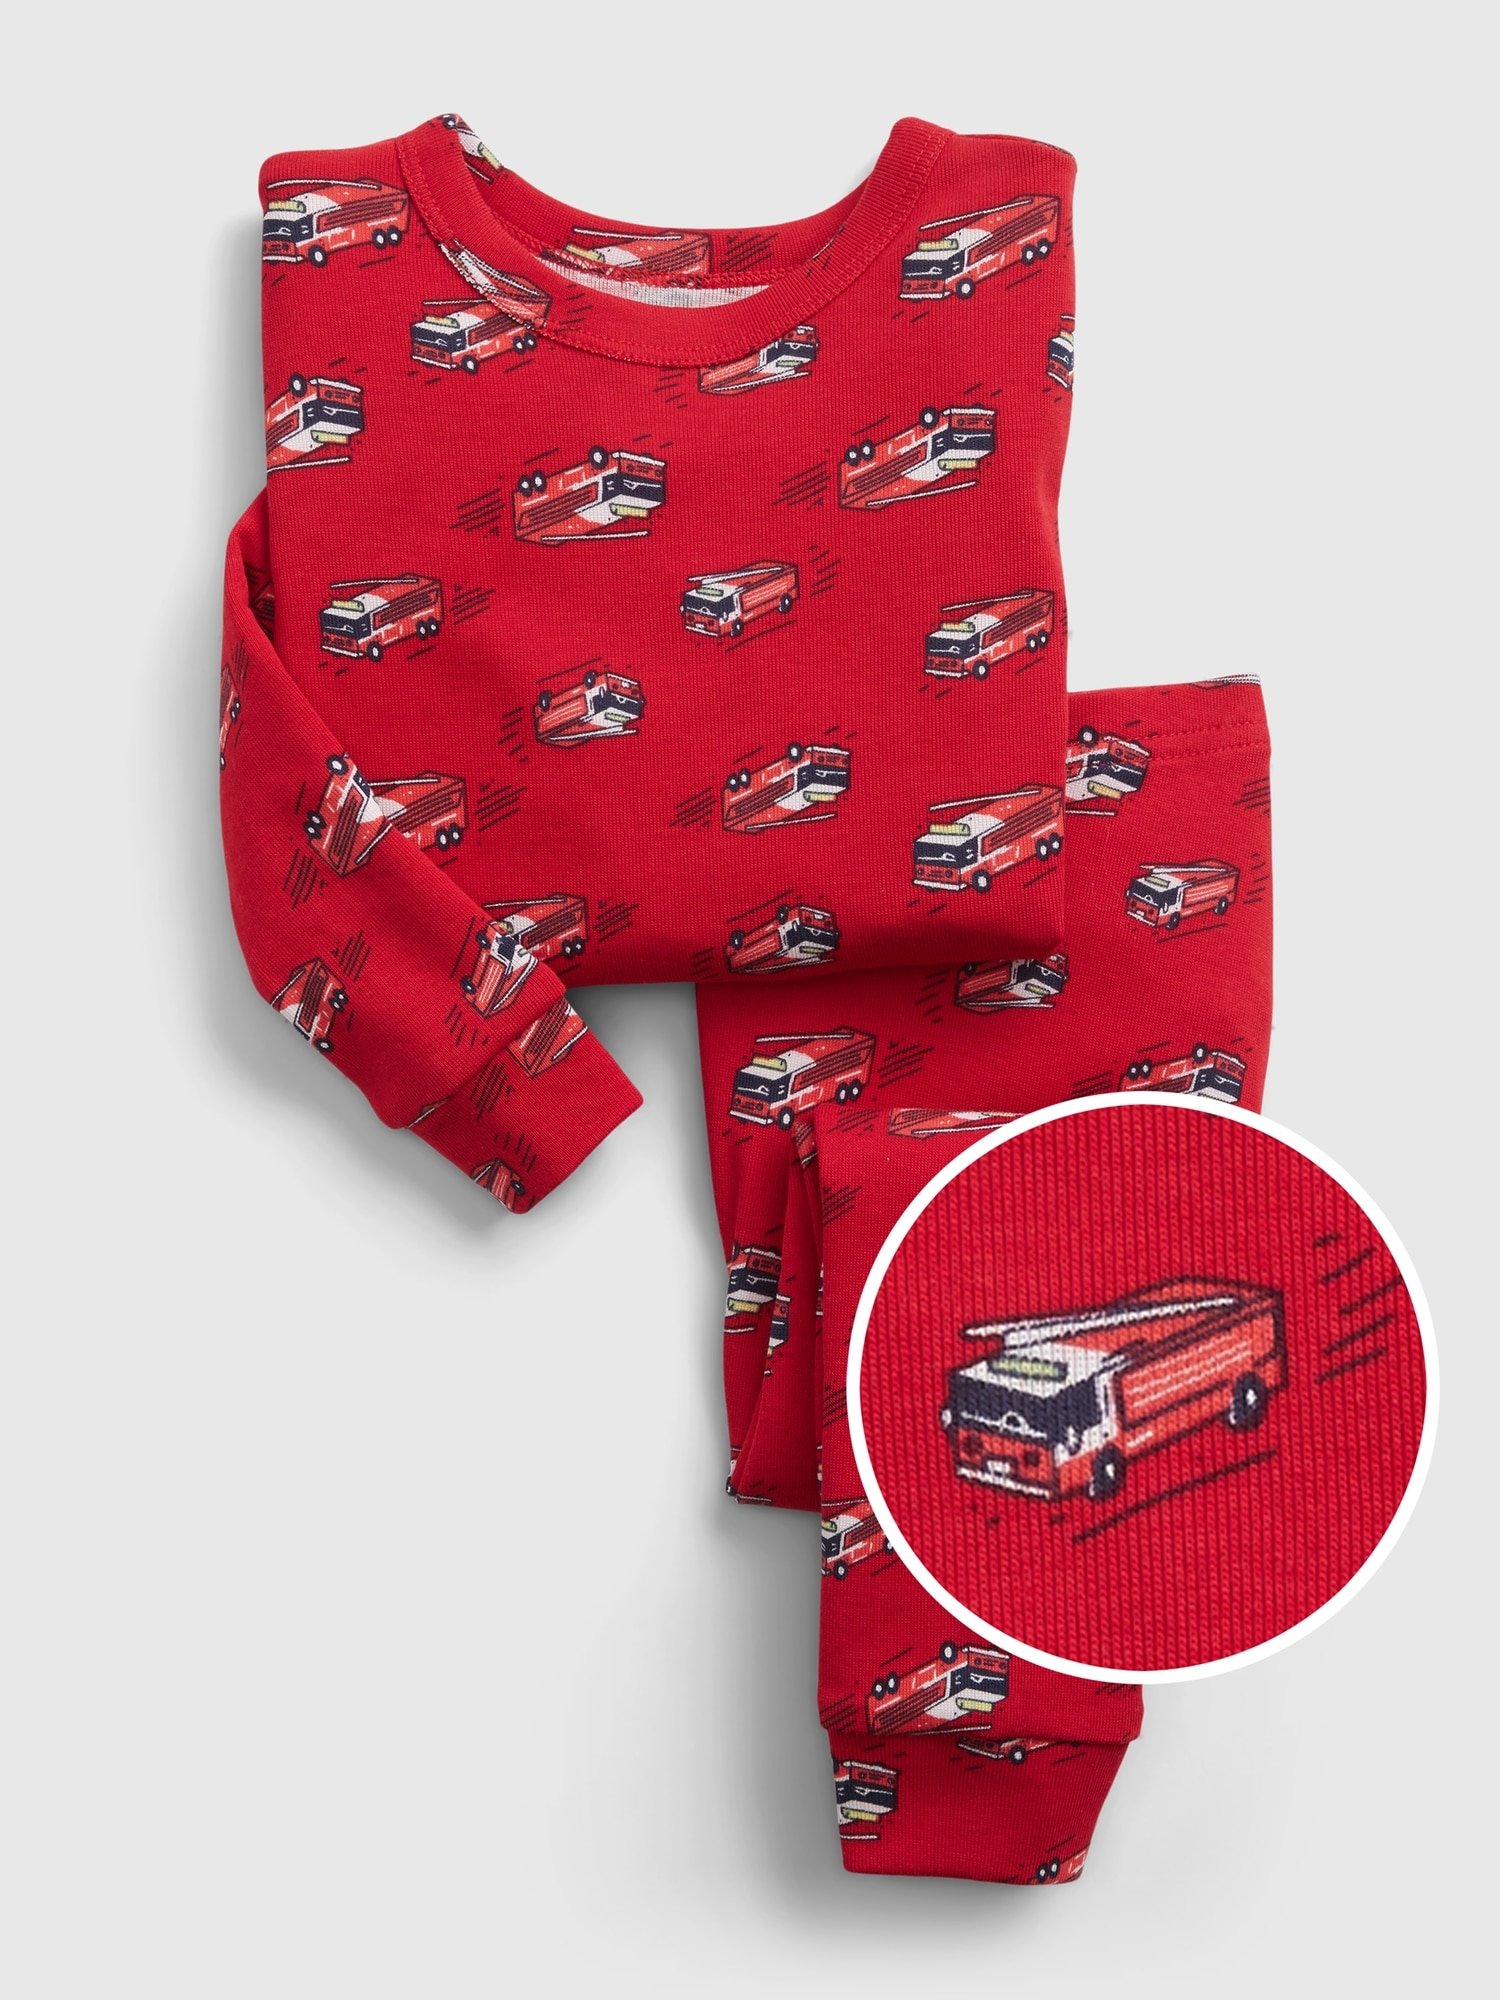 Fotografie Červené klučičí dětské pyžamo 100% organic cotton fire truck pj set